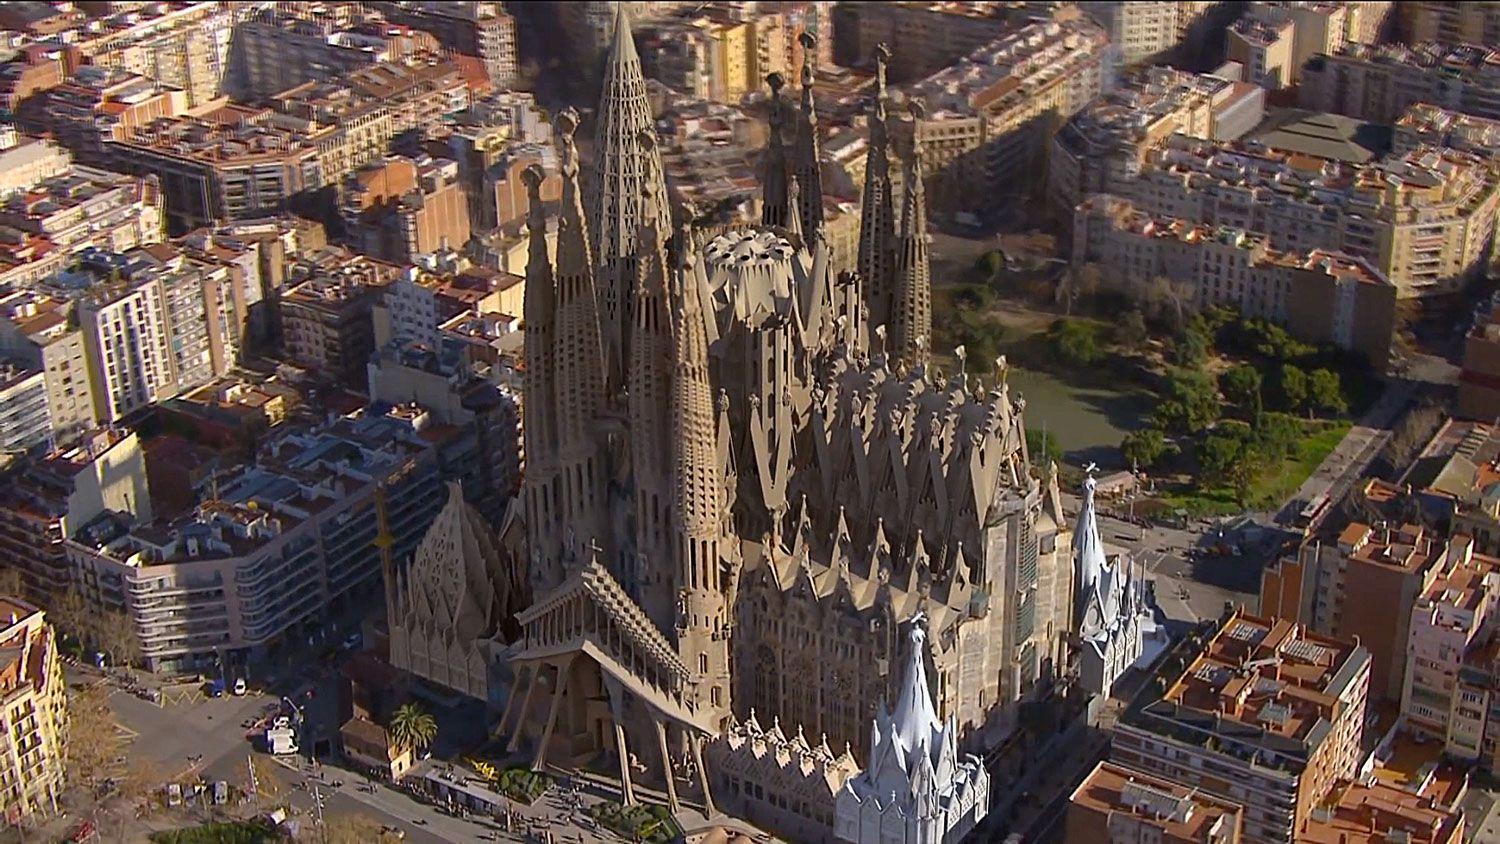 Barcelona Sagrada Familia 2 HD Wallpaper